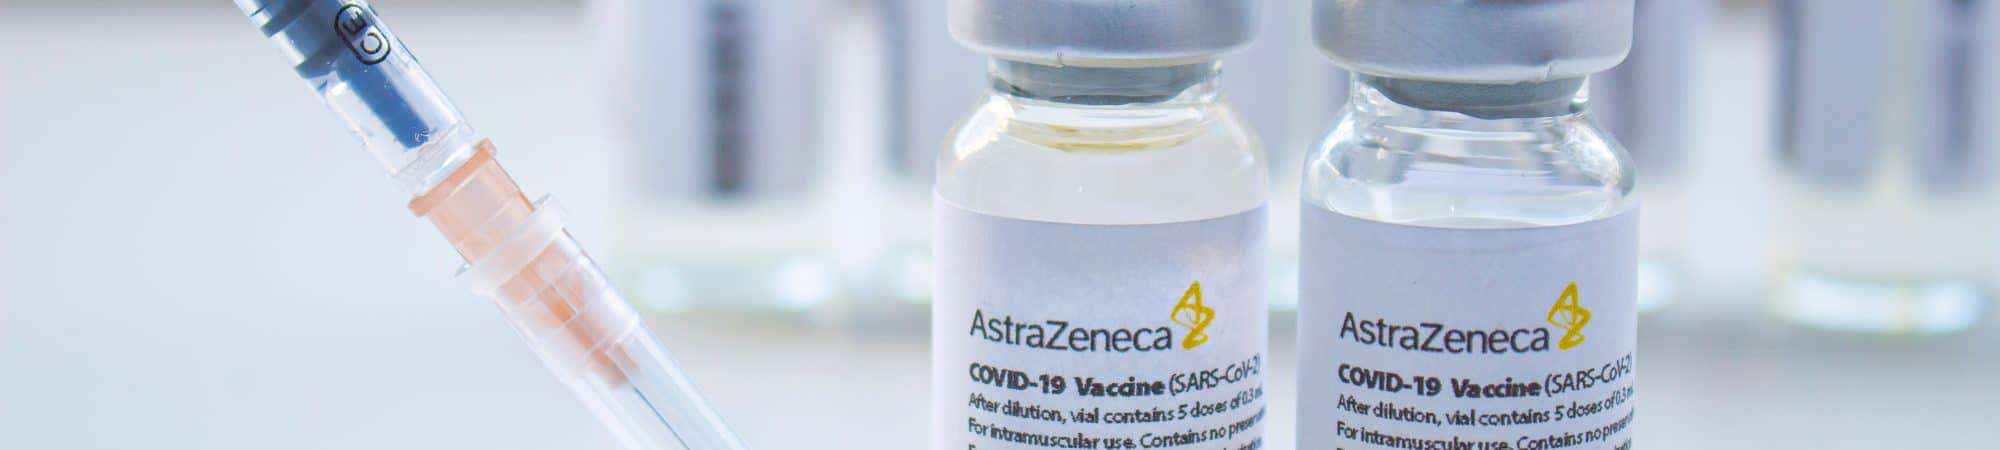 Doses da vacina AstraZeneca